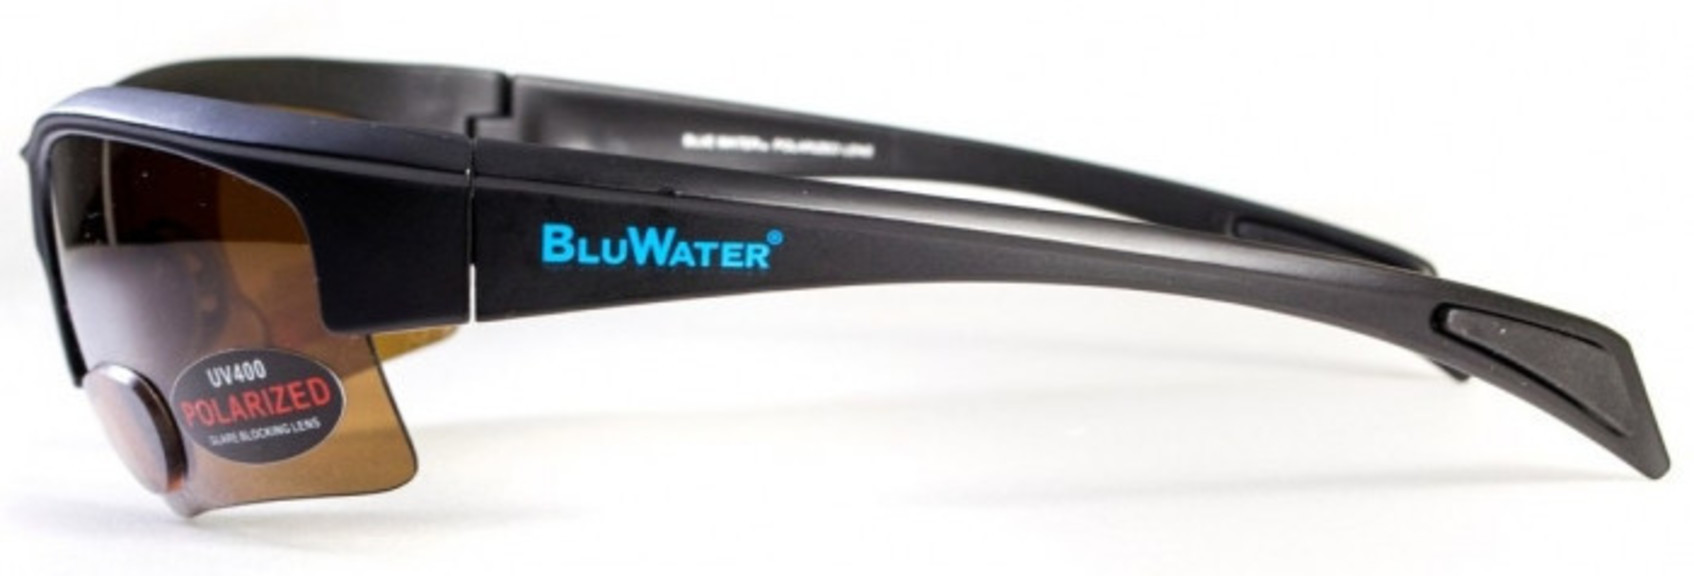 Бифокальные очки с поляризацией BluWater Bifocal 2 Brown +3,0 дптр